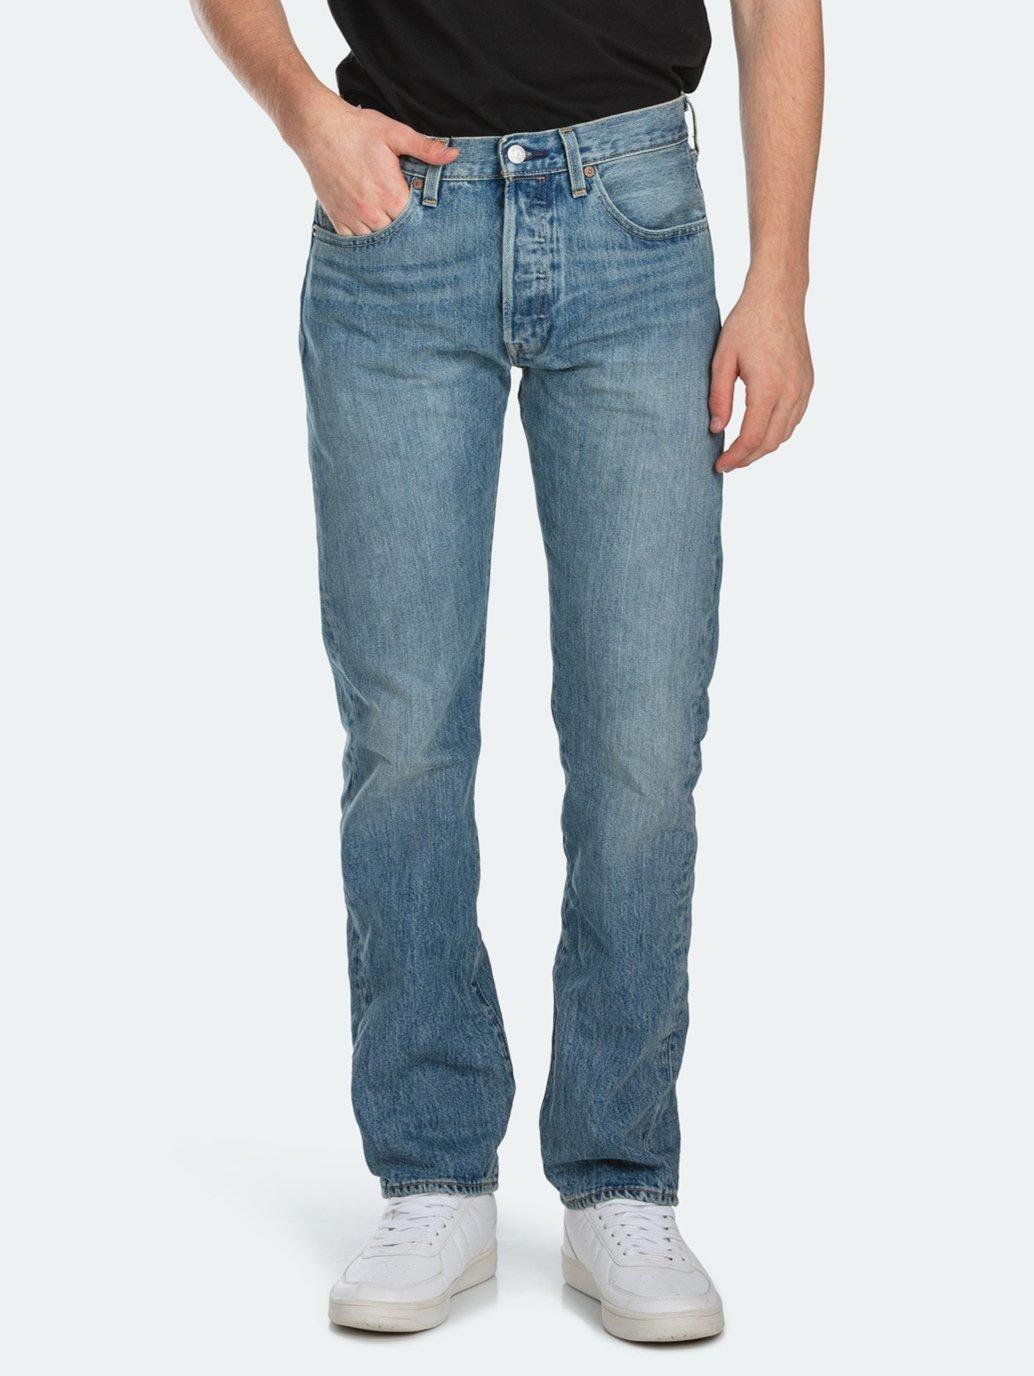 Buy Made in Men's 501® Original Jeans Levi's® HK Official Online Shop